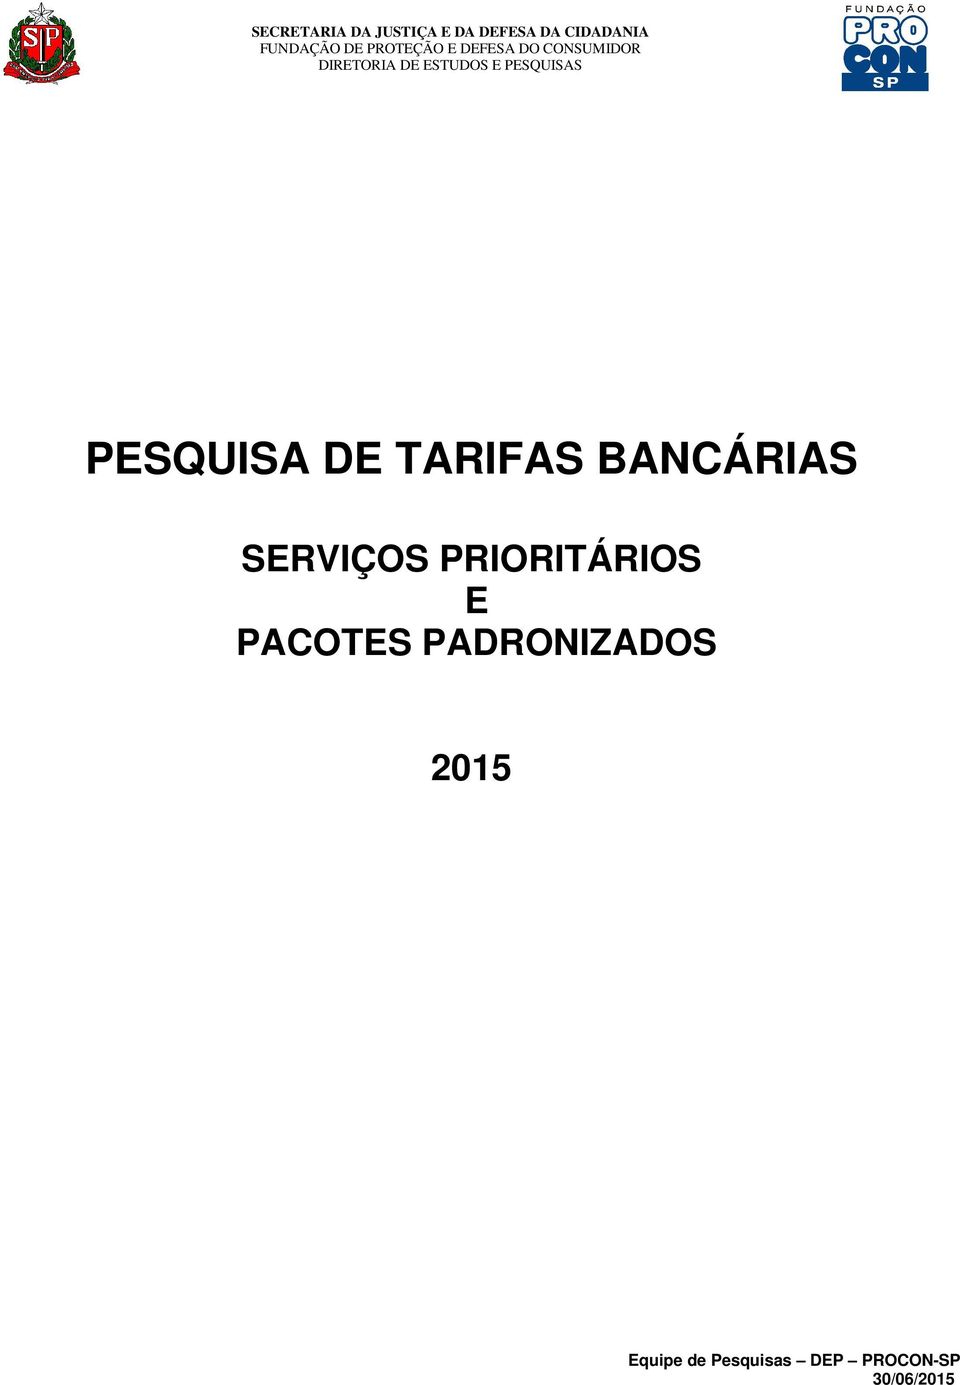 PACOTES PADRONIZADOS 2015